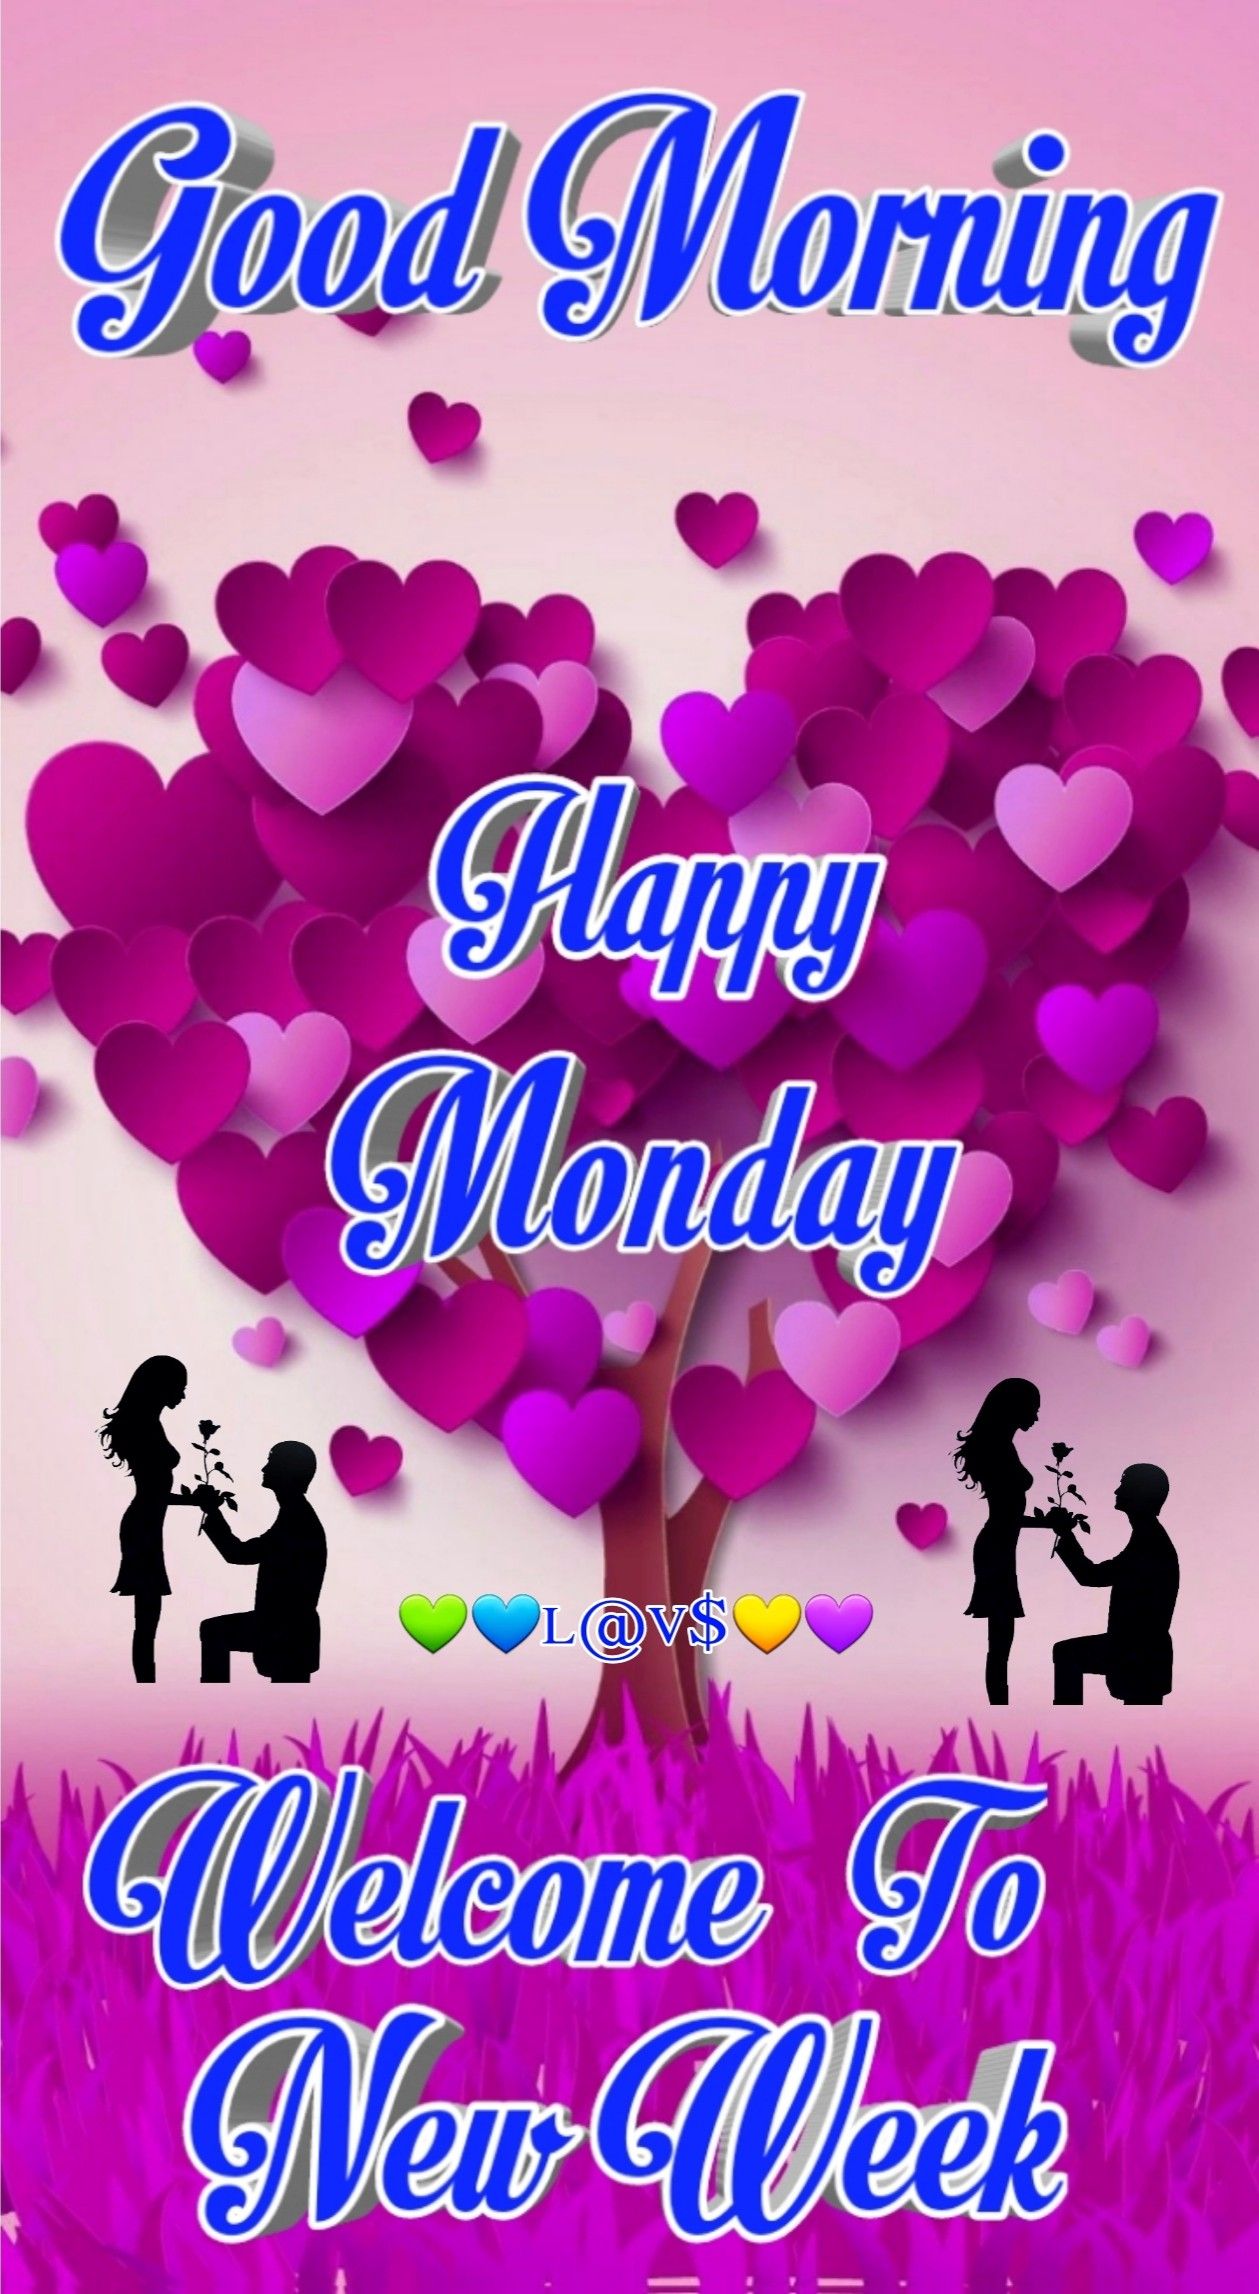 Happy Monday Everybody Monday images - Happy Monday Everybody Monday images